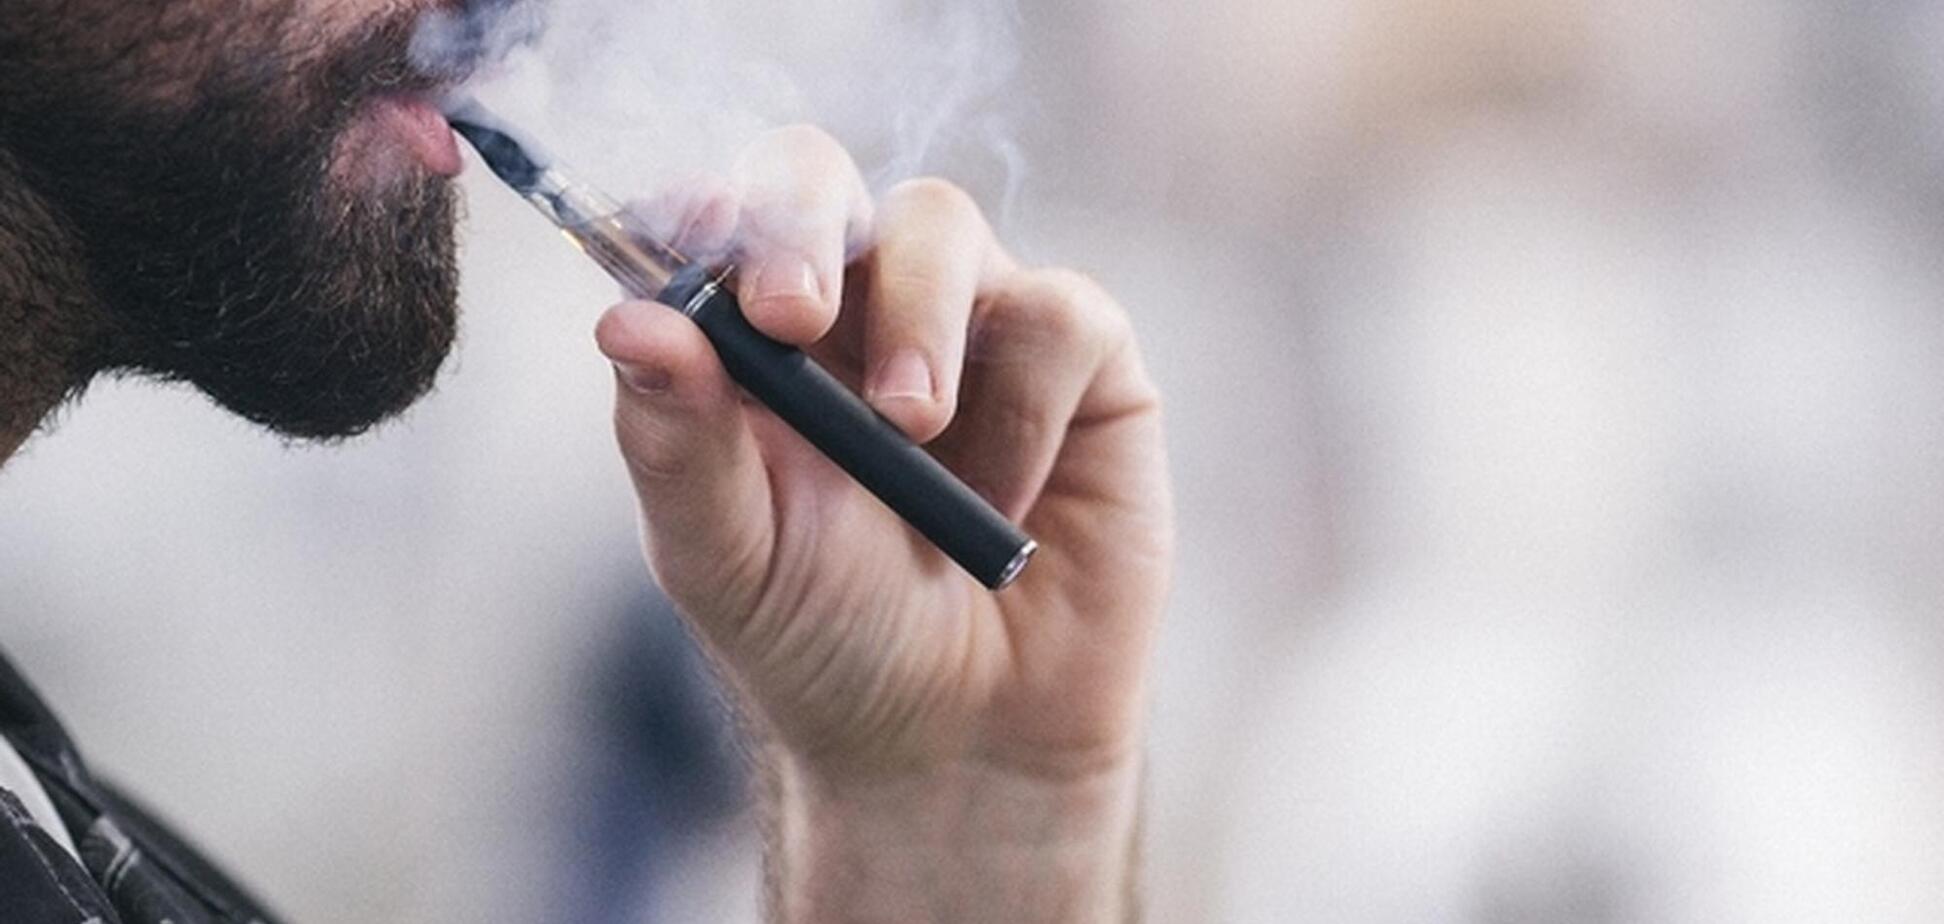 Государство должно вмешаться в борьбу с контрабандой электронных сигарет, – Лямец